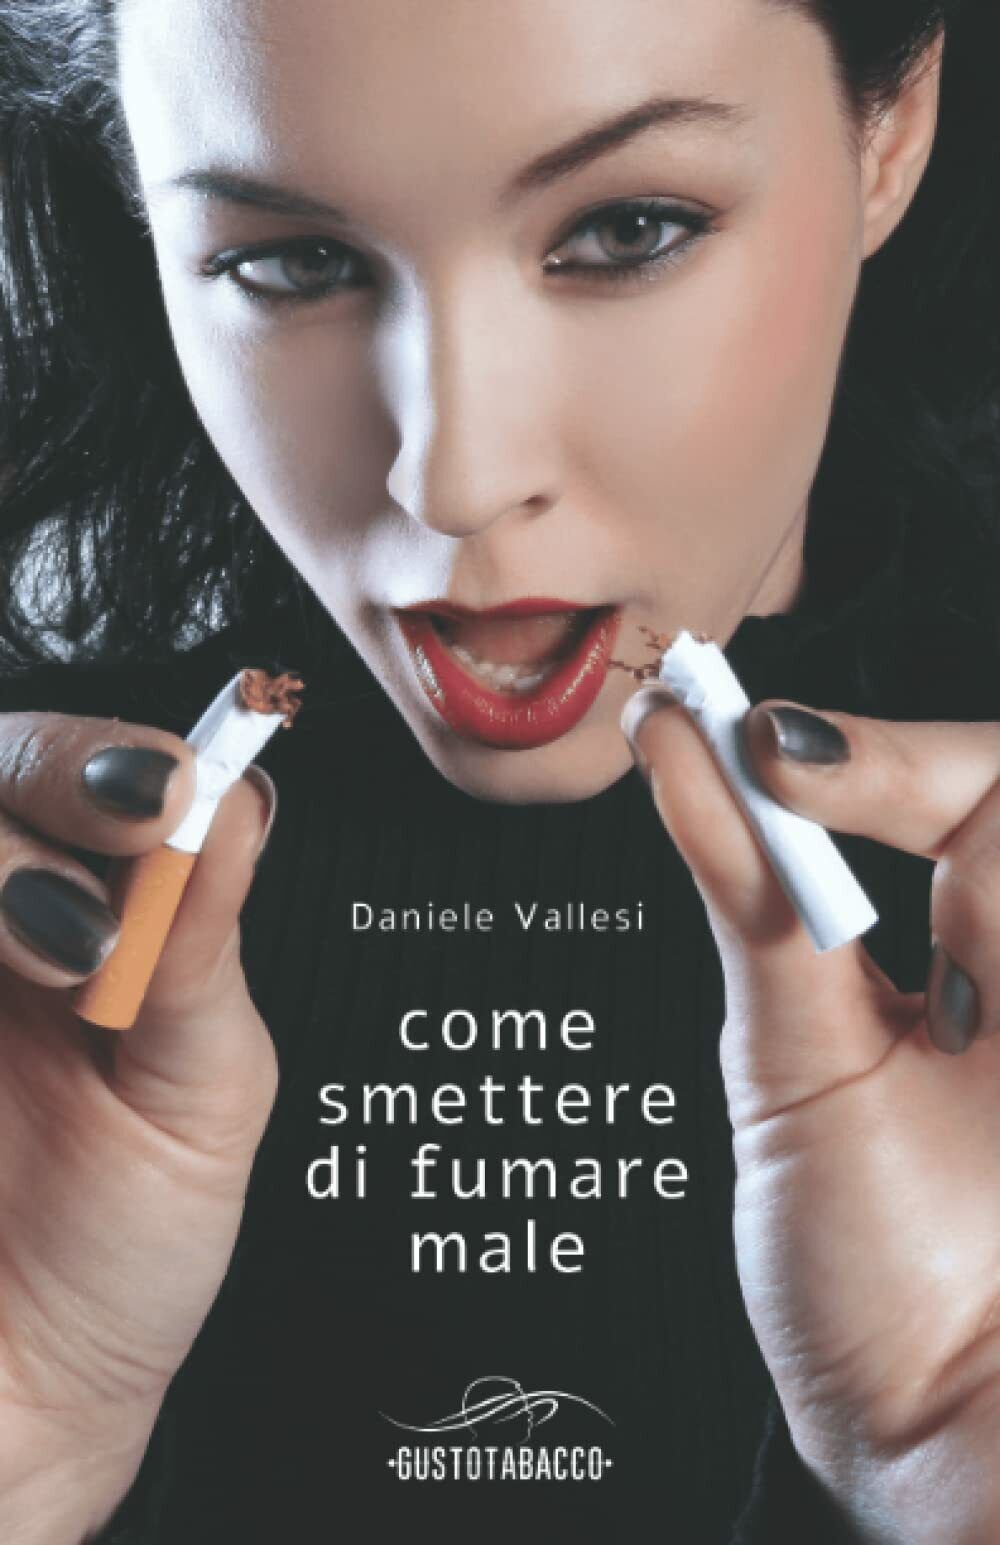  Come smettere di fumare male di Daniele Vallesi,  2021,  Indipendently Publish